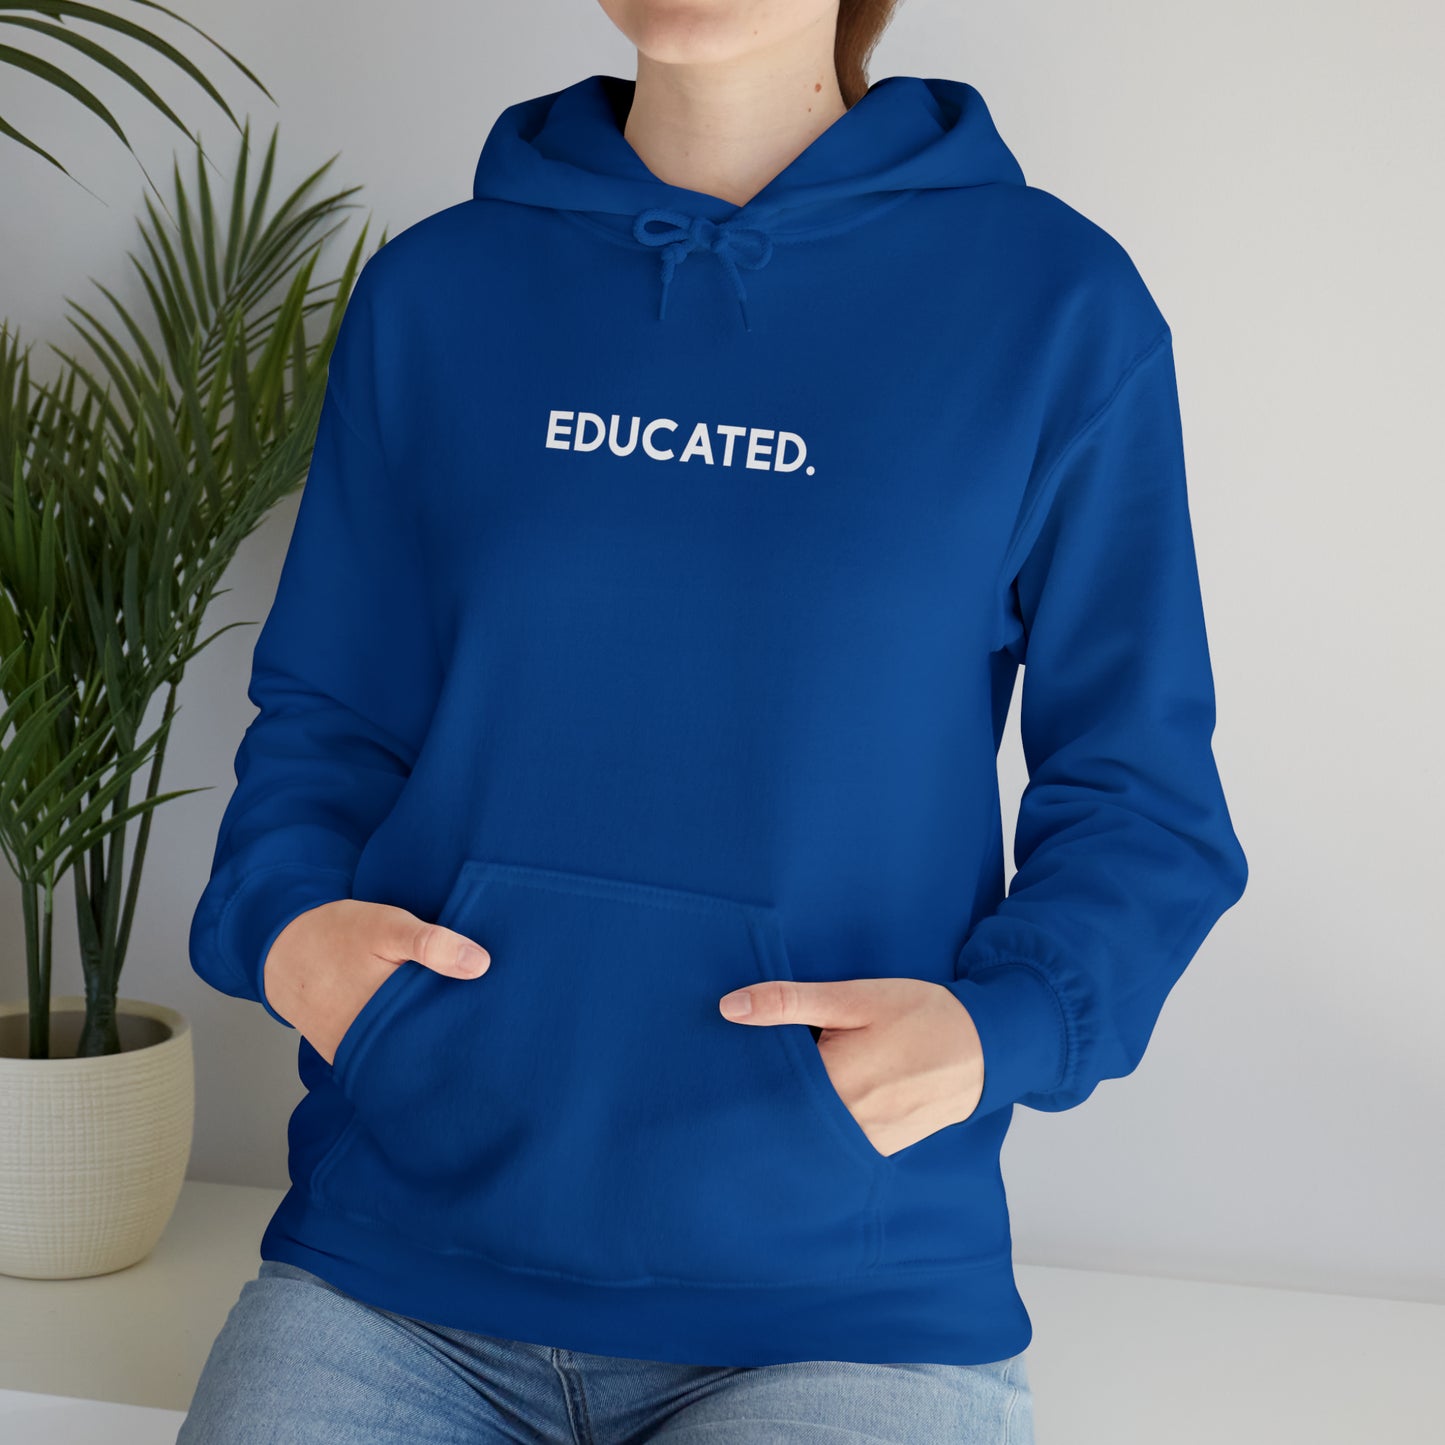 "Educated" Hoodie